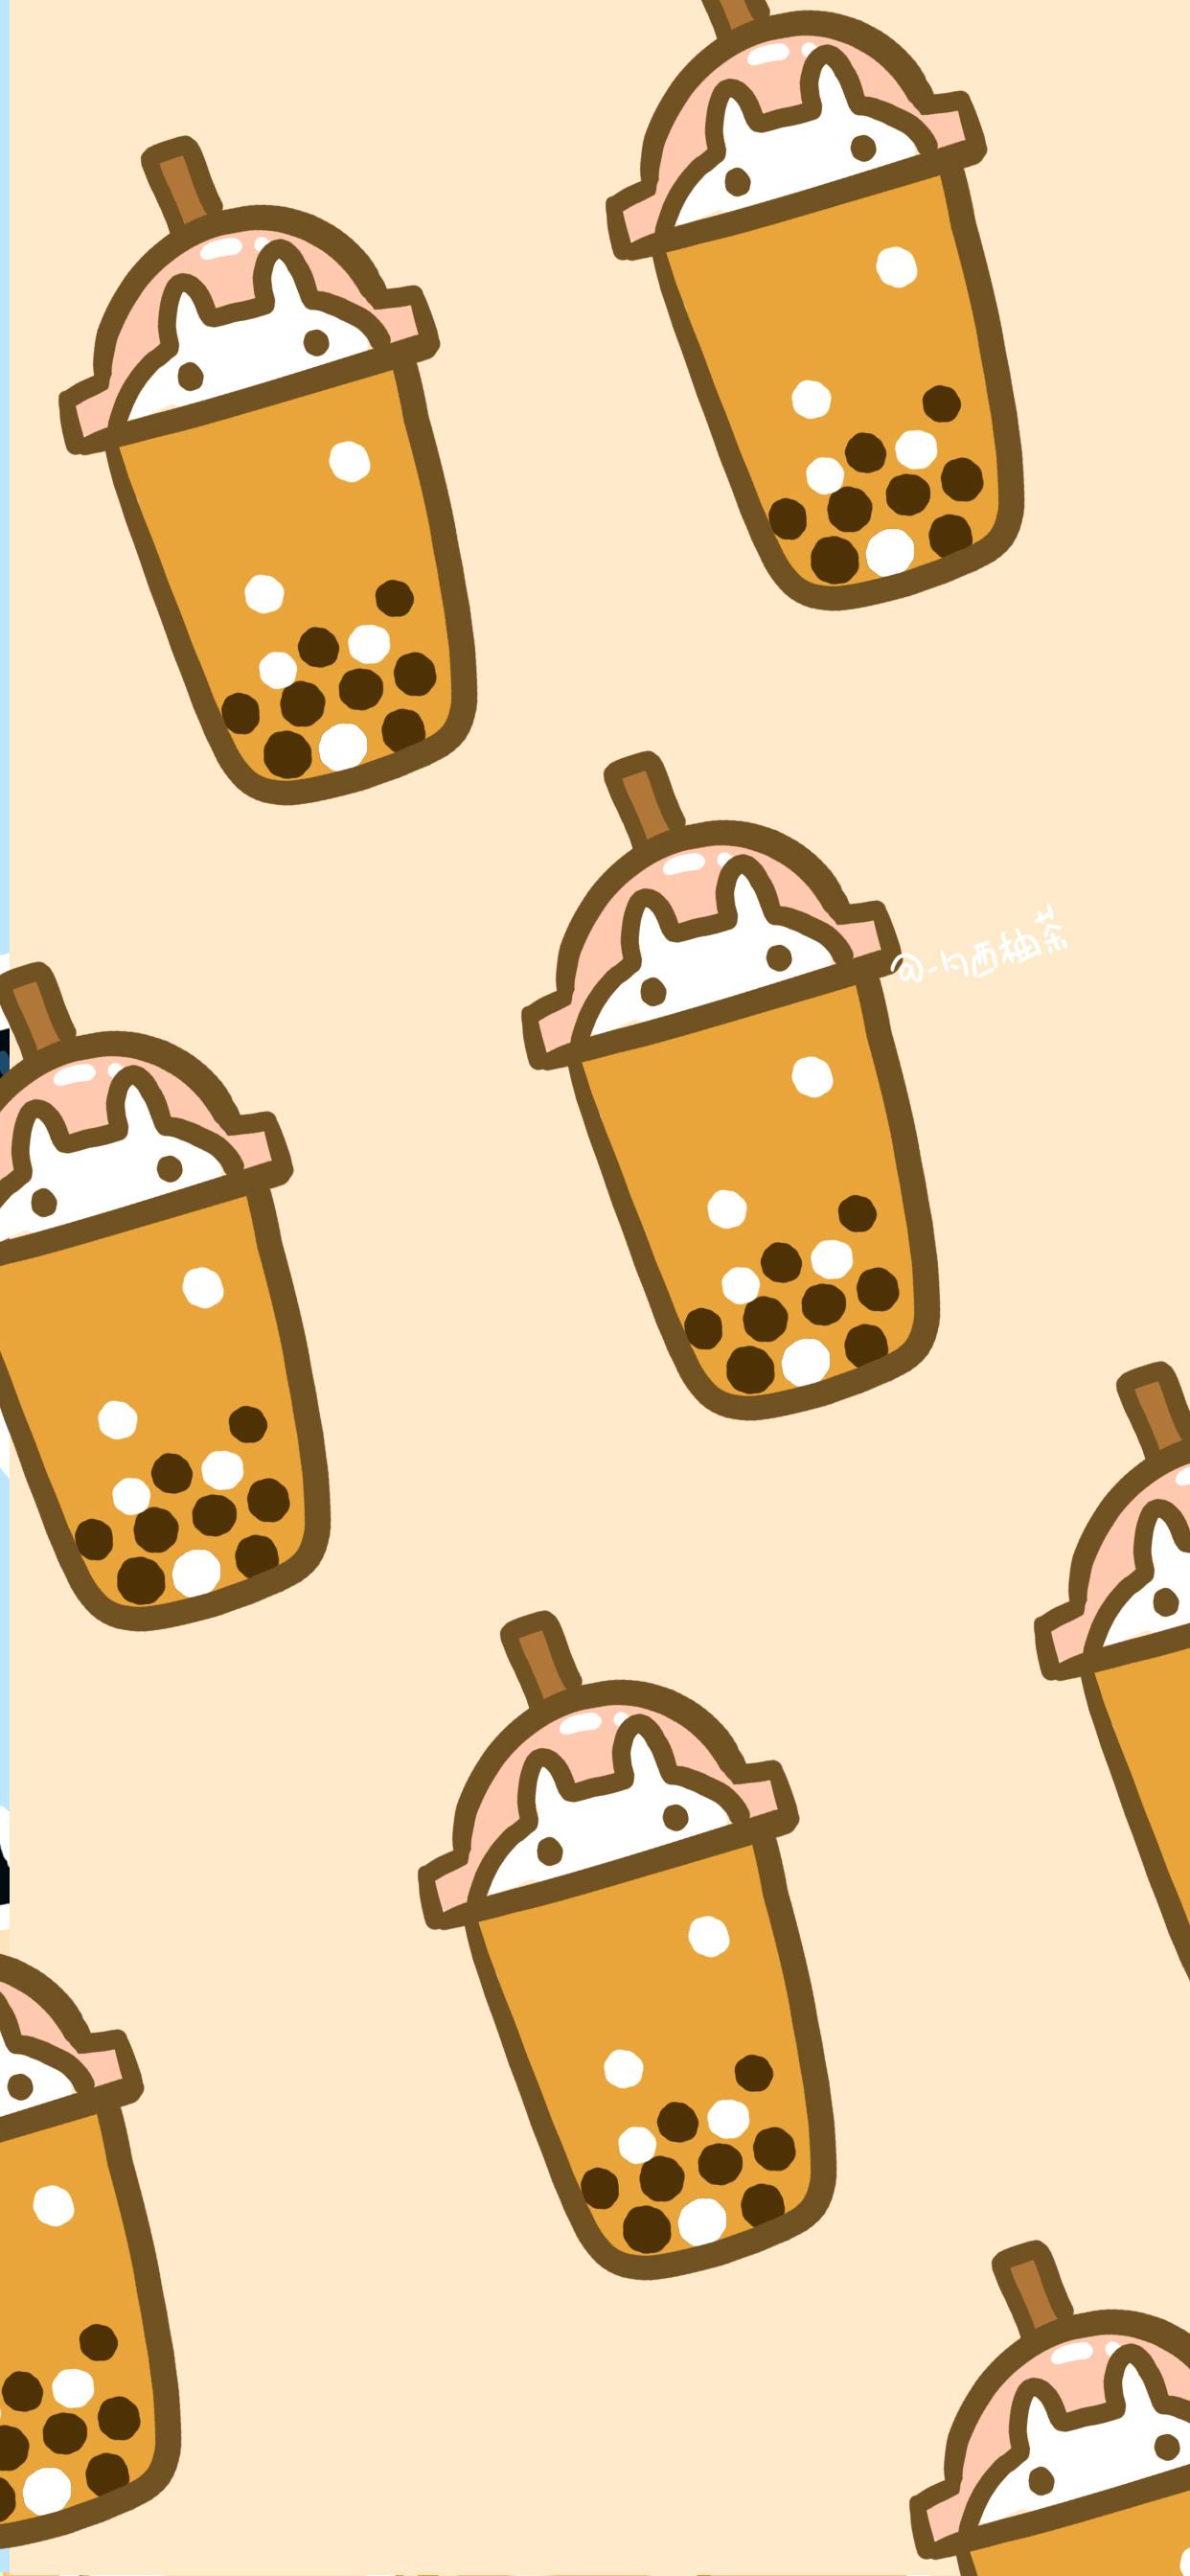 可爱卡通壁纸##粉色控# "奶茶这种东西喝多了也没意思每天早中晚三杯